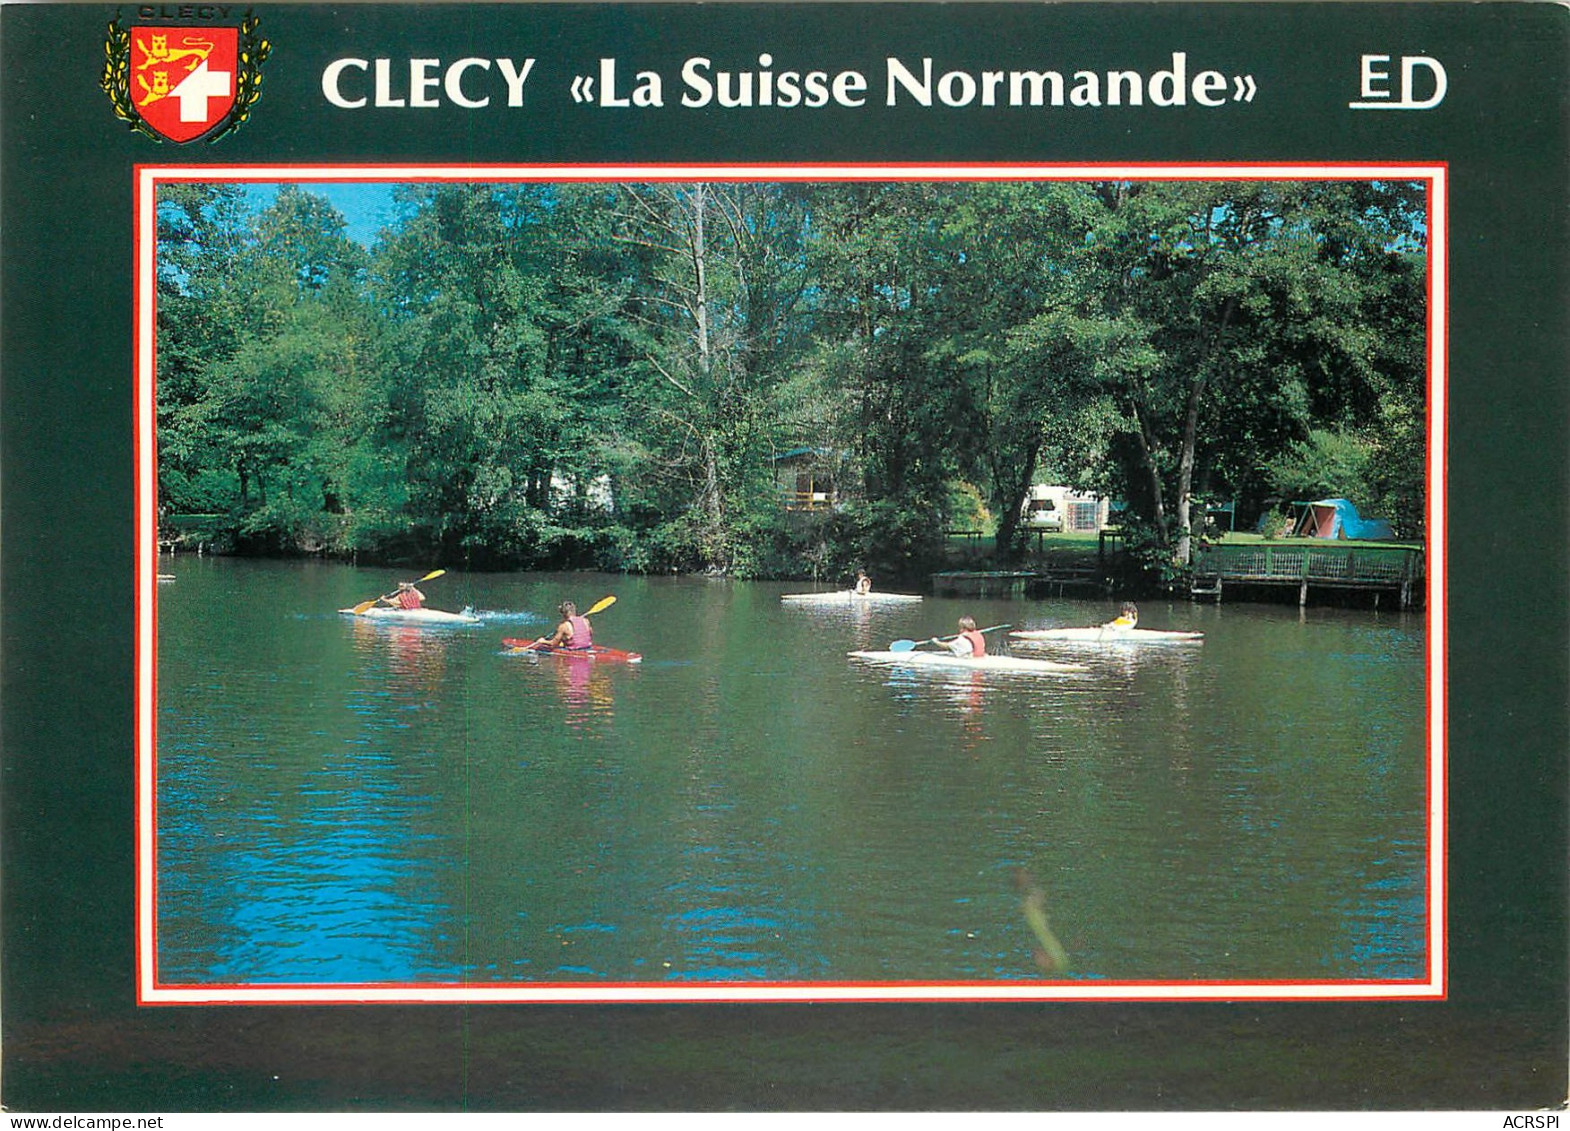 CLECY Canotage Sur Les Bords De L Orne 20(scan Recto Verso)ME2677 - Clécy